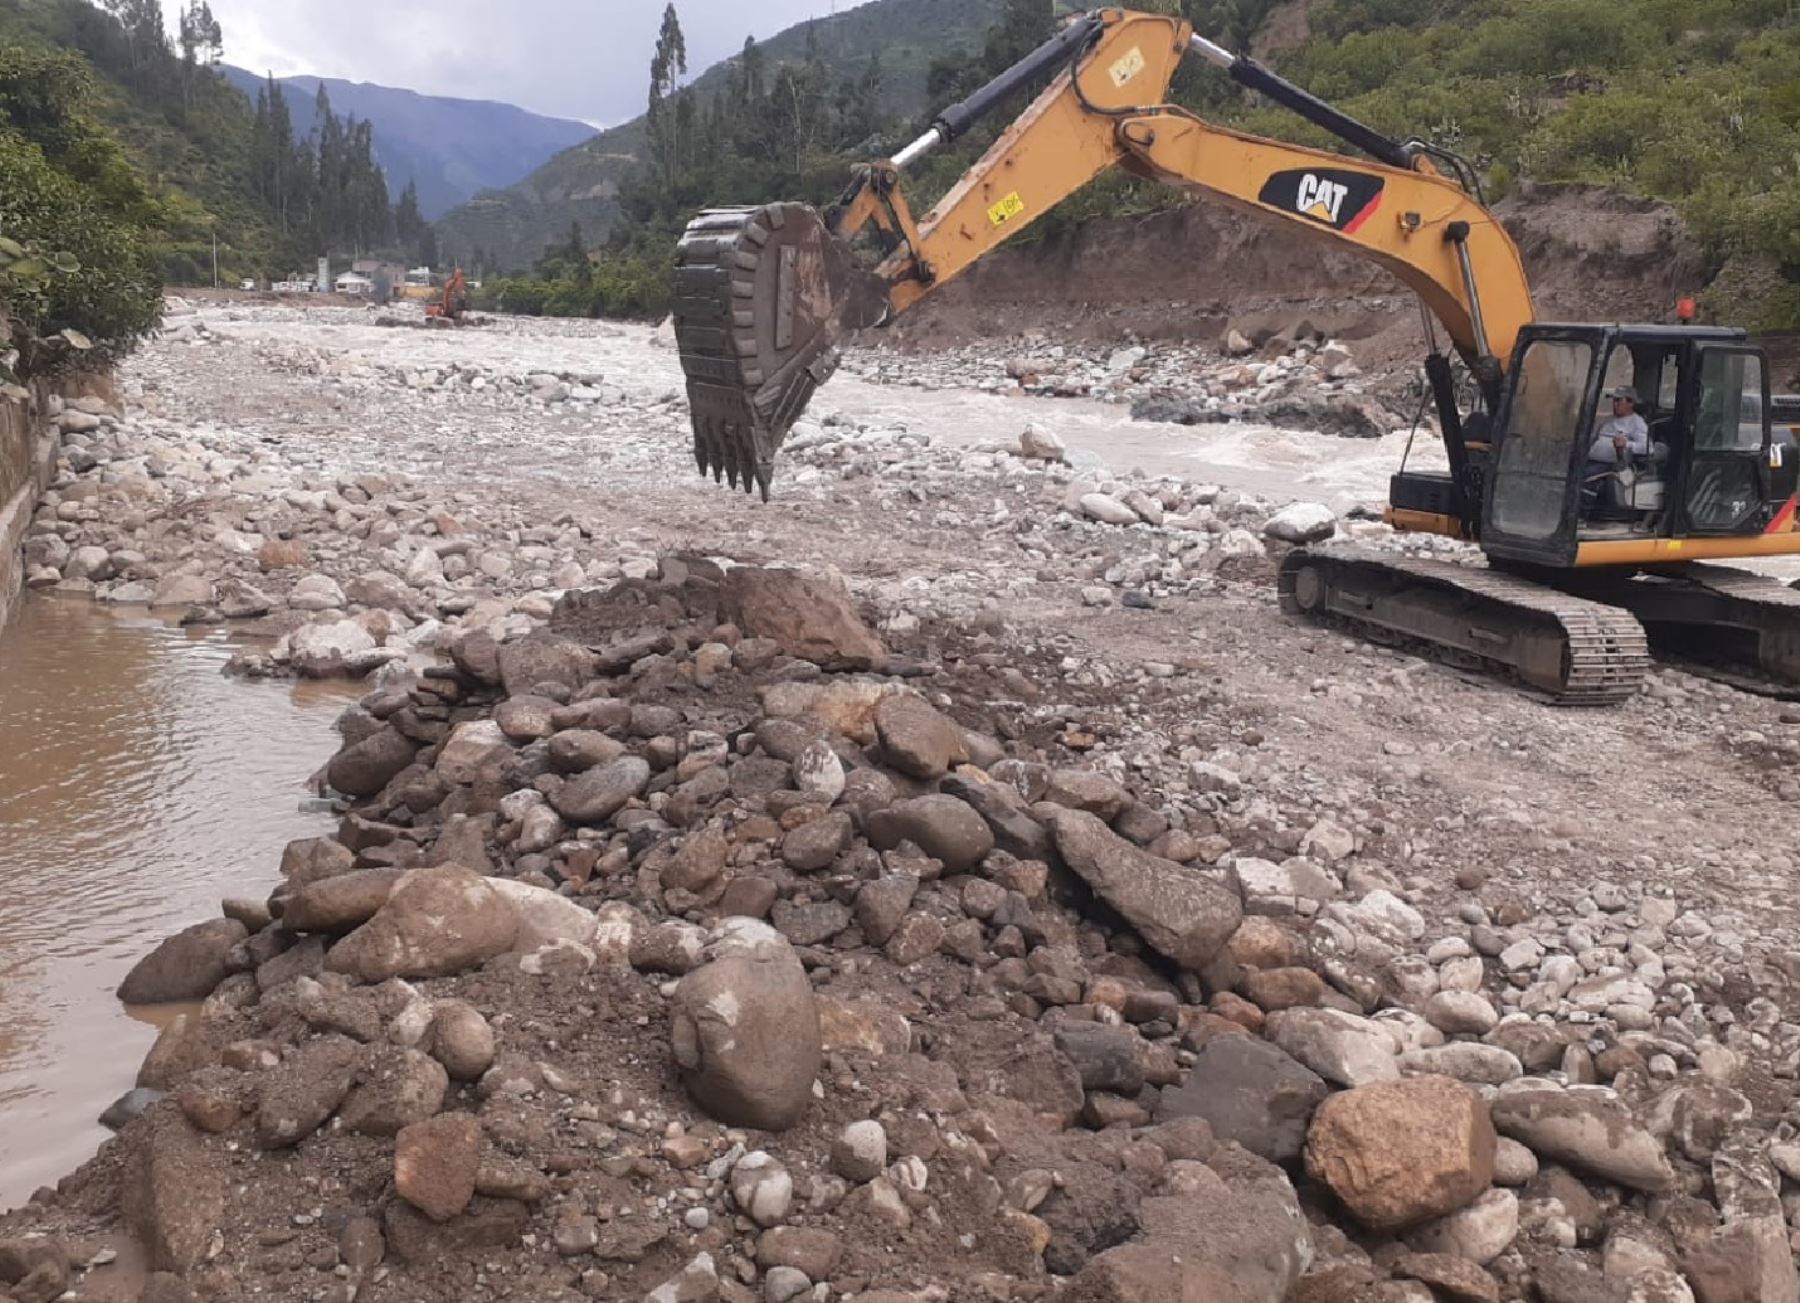 Midagri envió maquinaria pesada a Chalhuanca, en Apurímac, para reforzar la atención de la emergencia causada por las lluvias intensas y el desborde del río Chalhuanca. Foto: ANDINA/difusión.